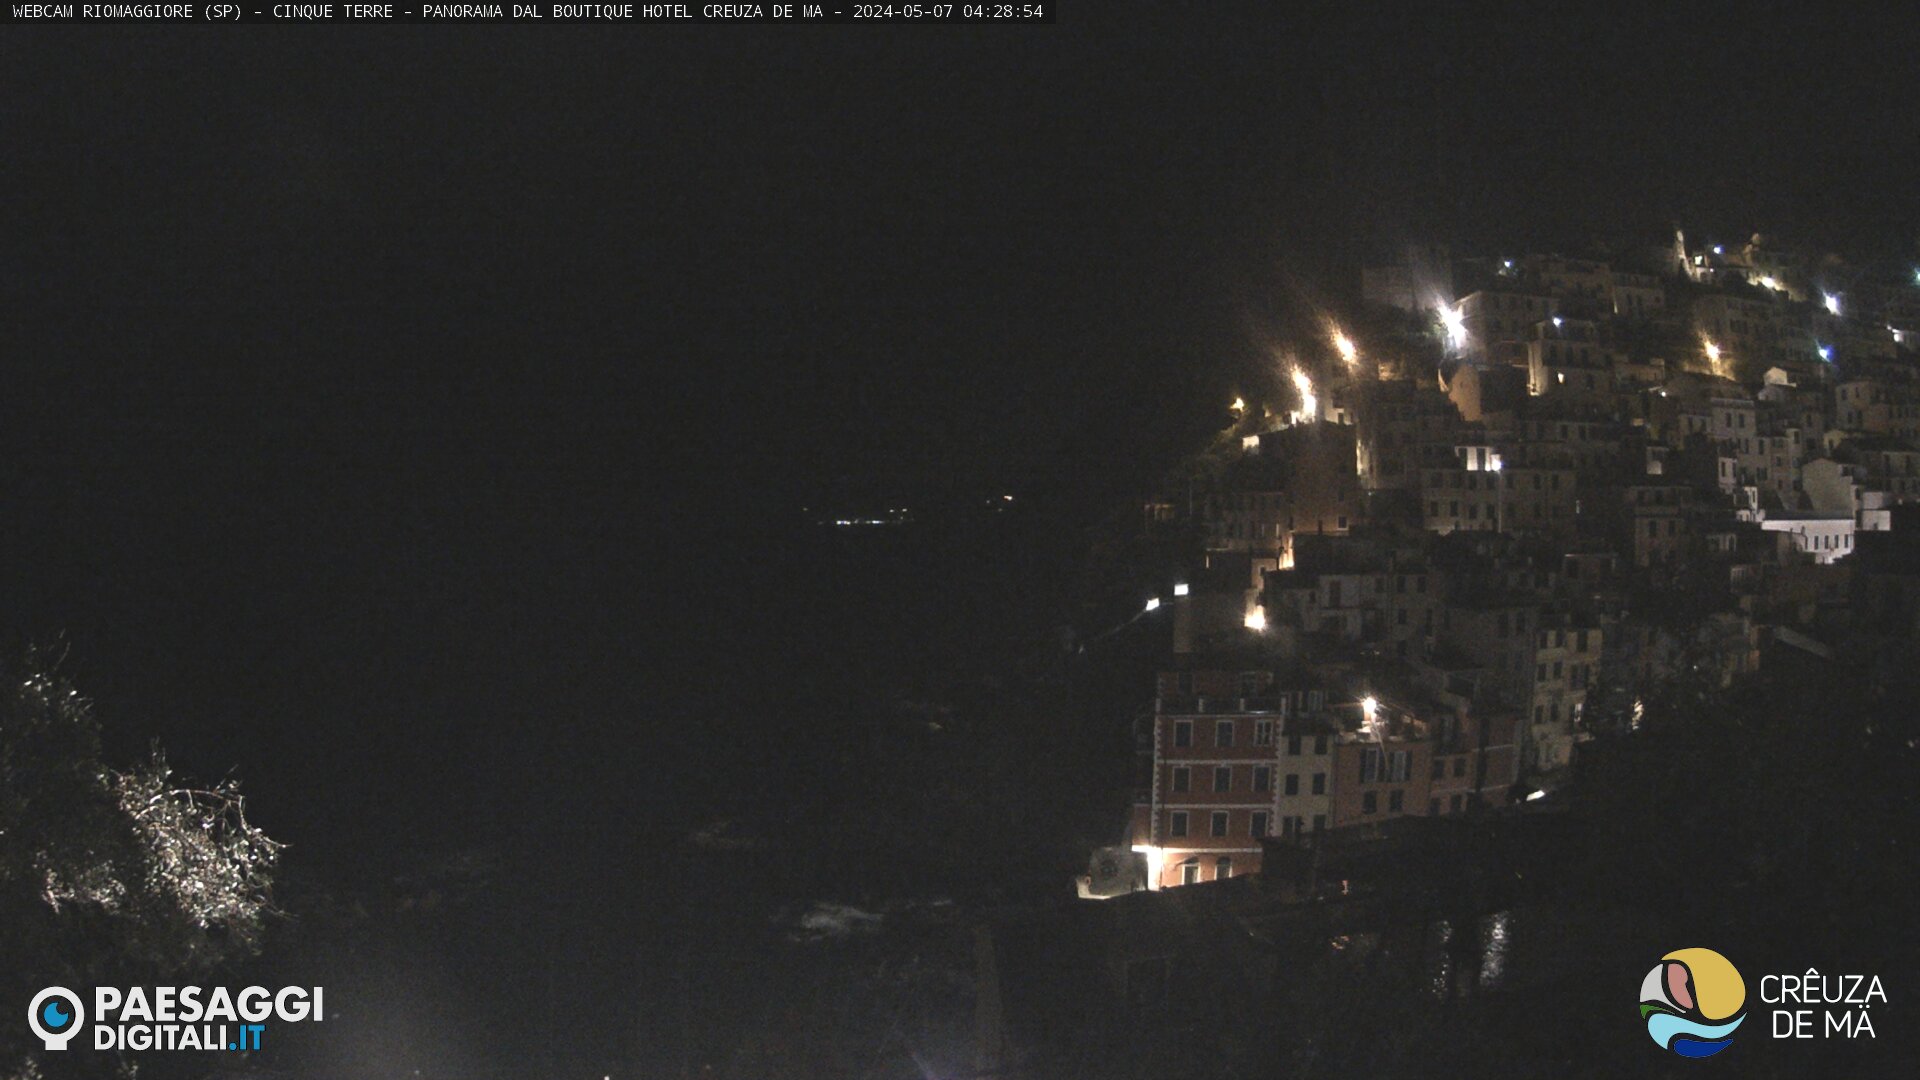 Riomaggiore (Cinque Terre) Mon. 04:31